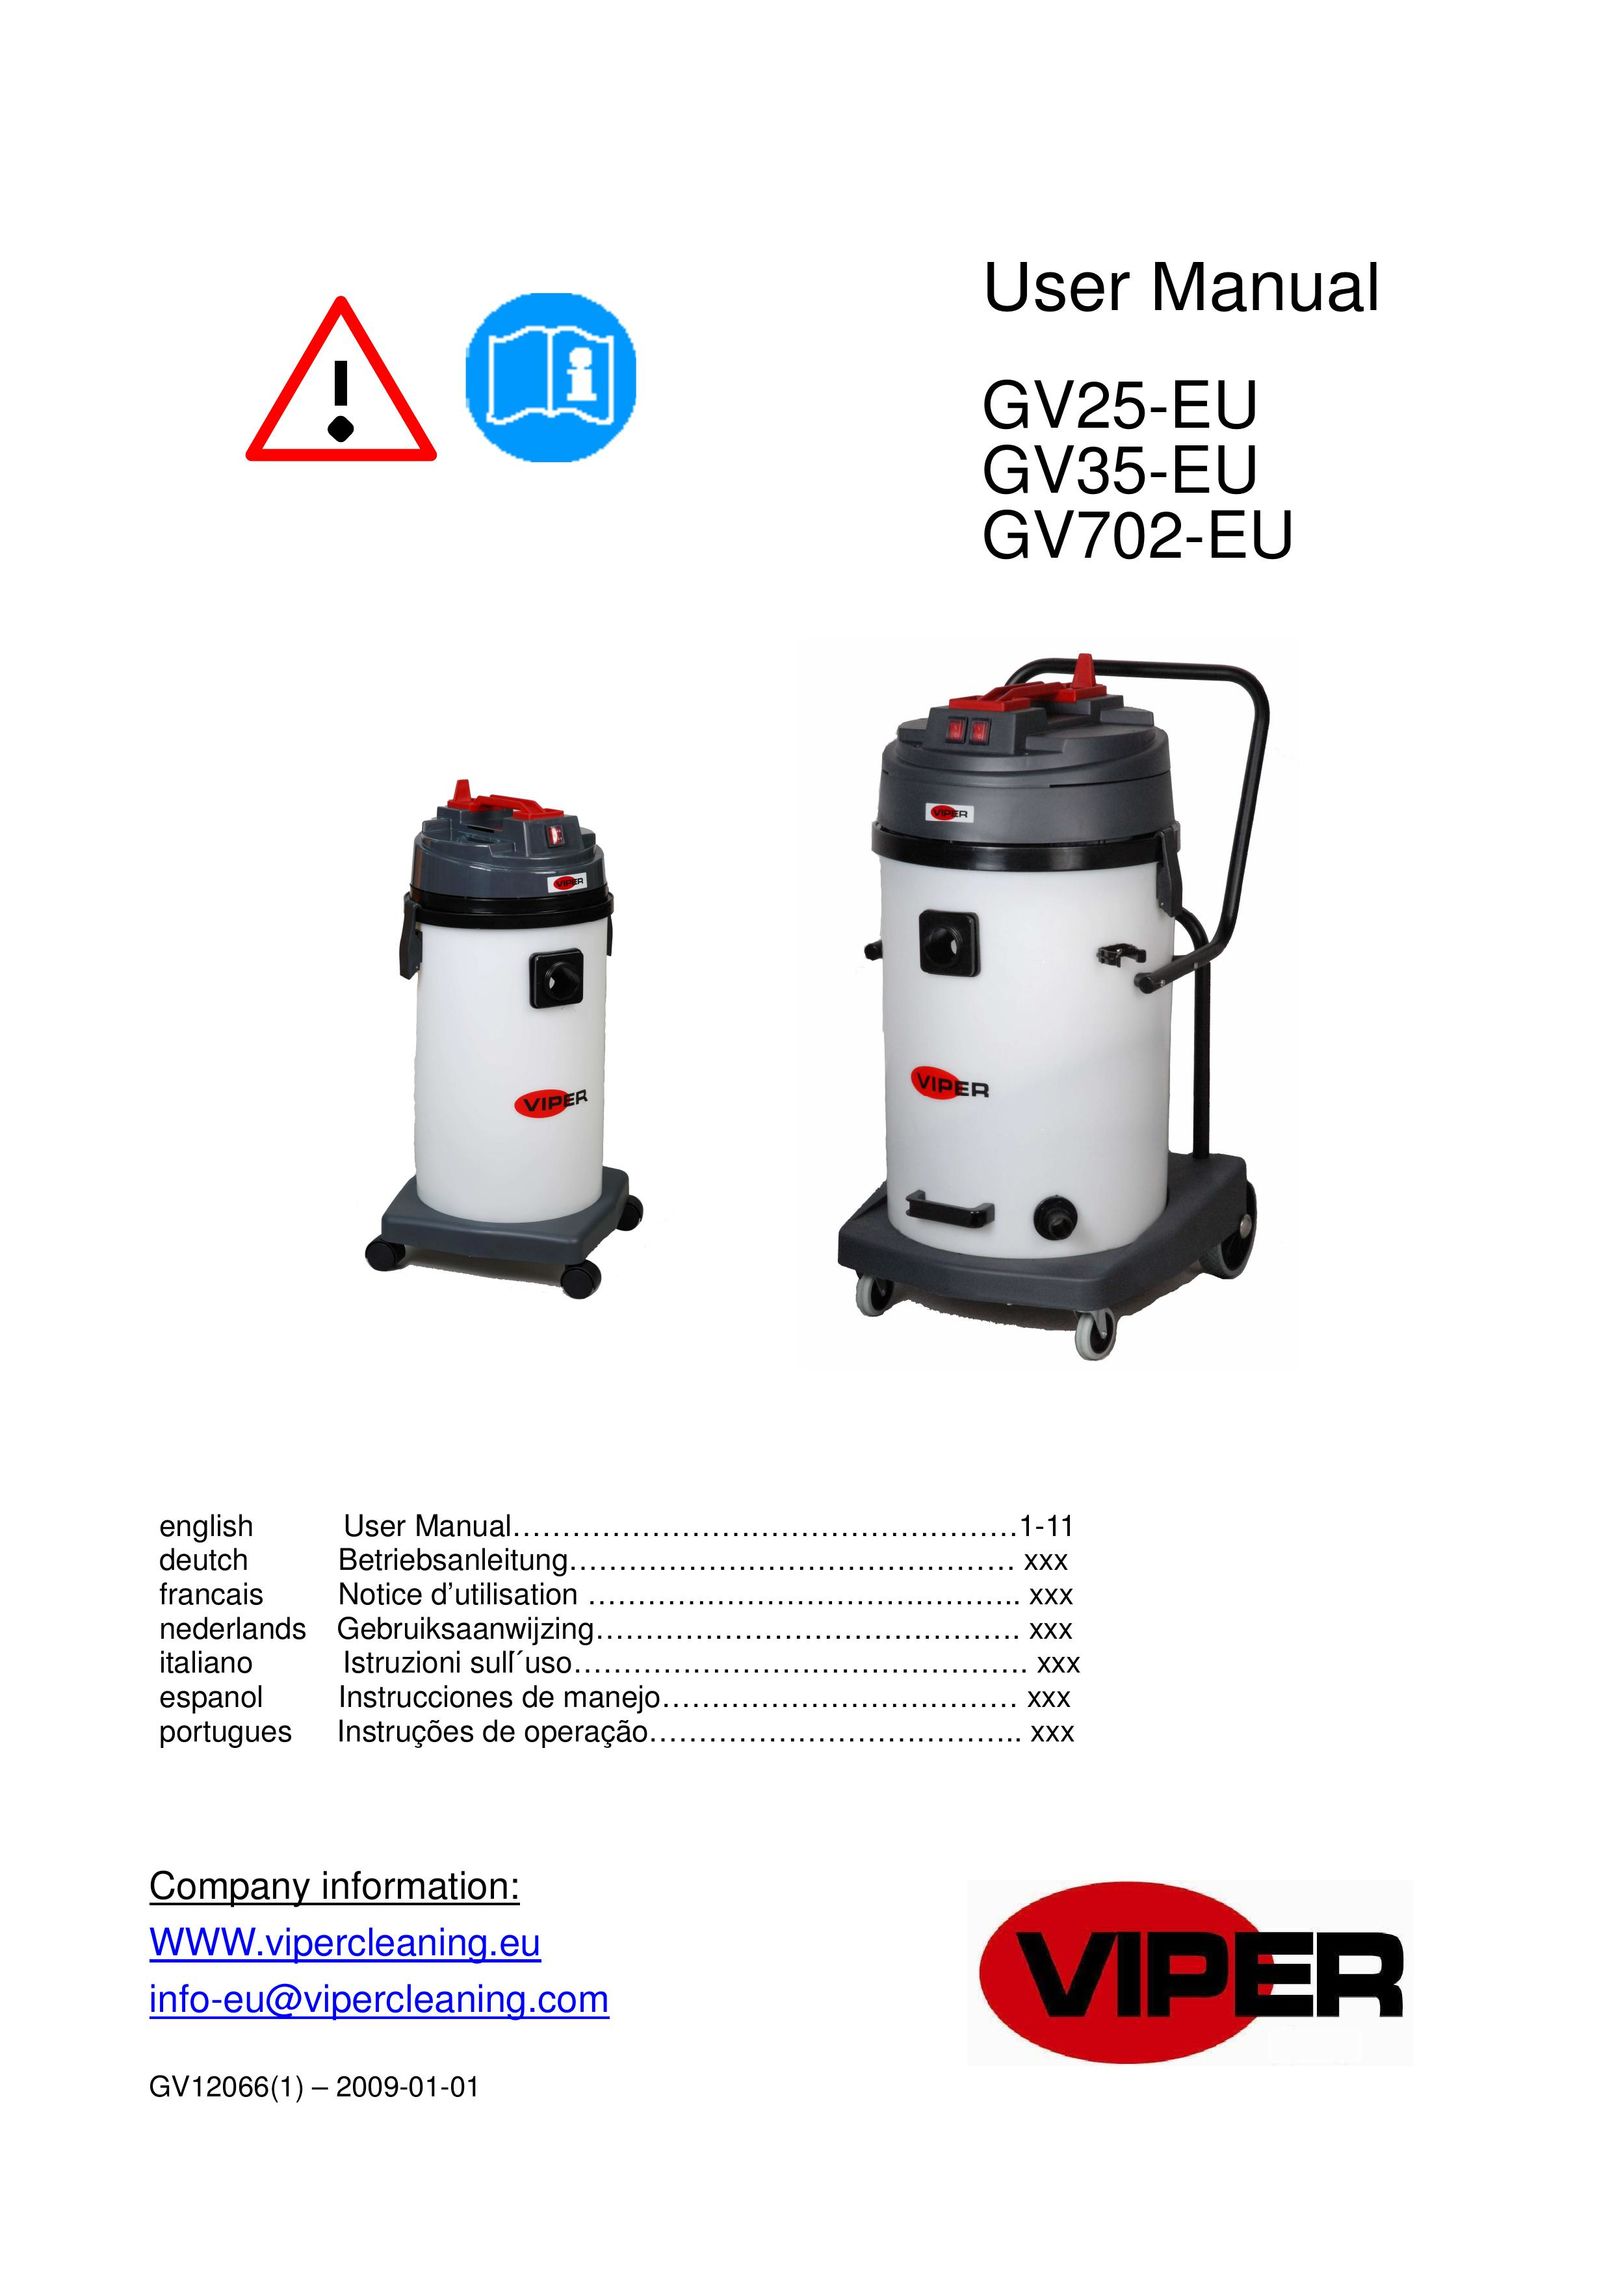 Viper GV702-EU Vacuum Cleaner User Manual